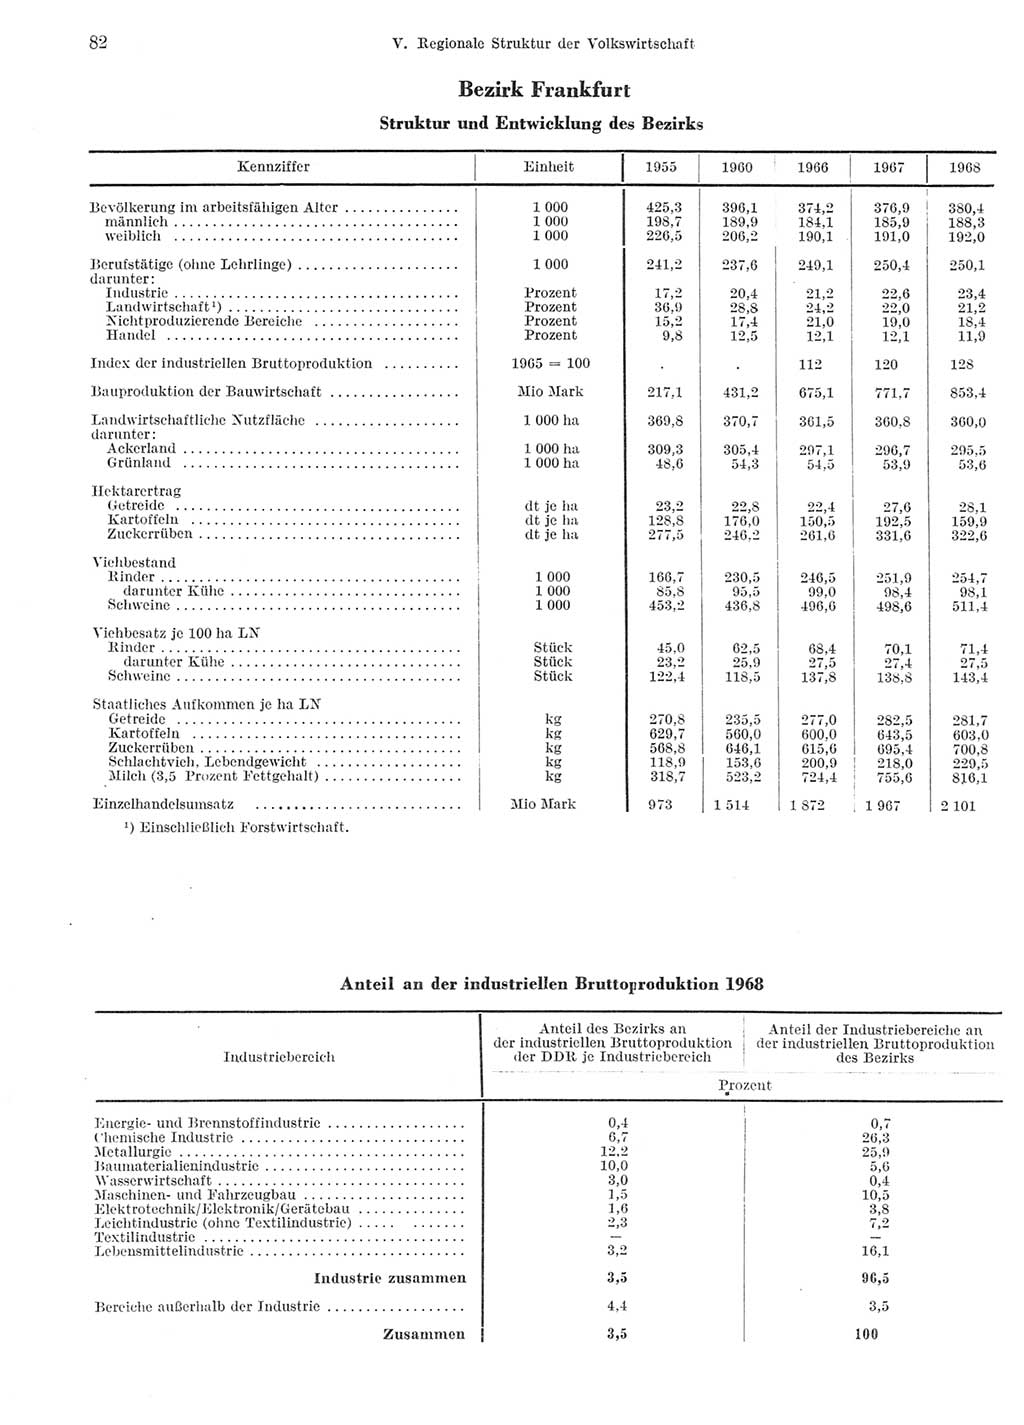 Statistisches Jahrbuch der Deutschen Demokratischen Republik (DDR) 1969, Seite 82 (Stat. Jb. DDR 1969, S. 82)